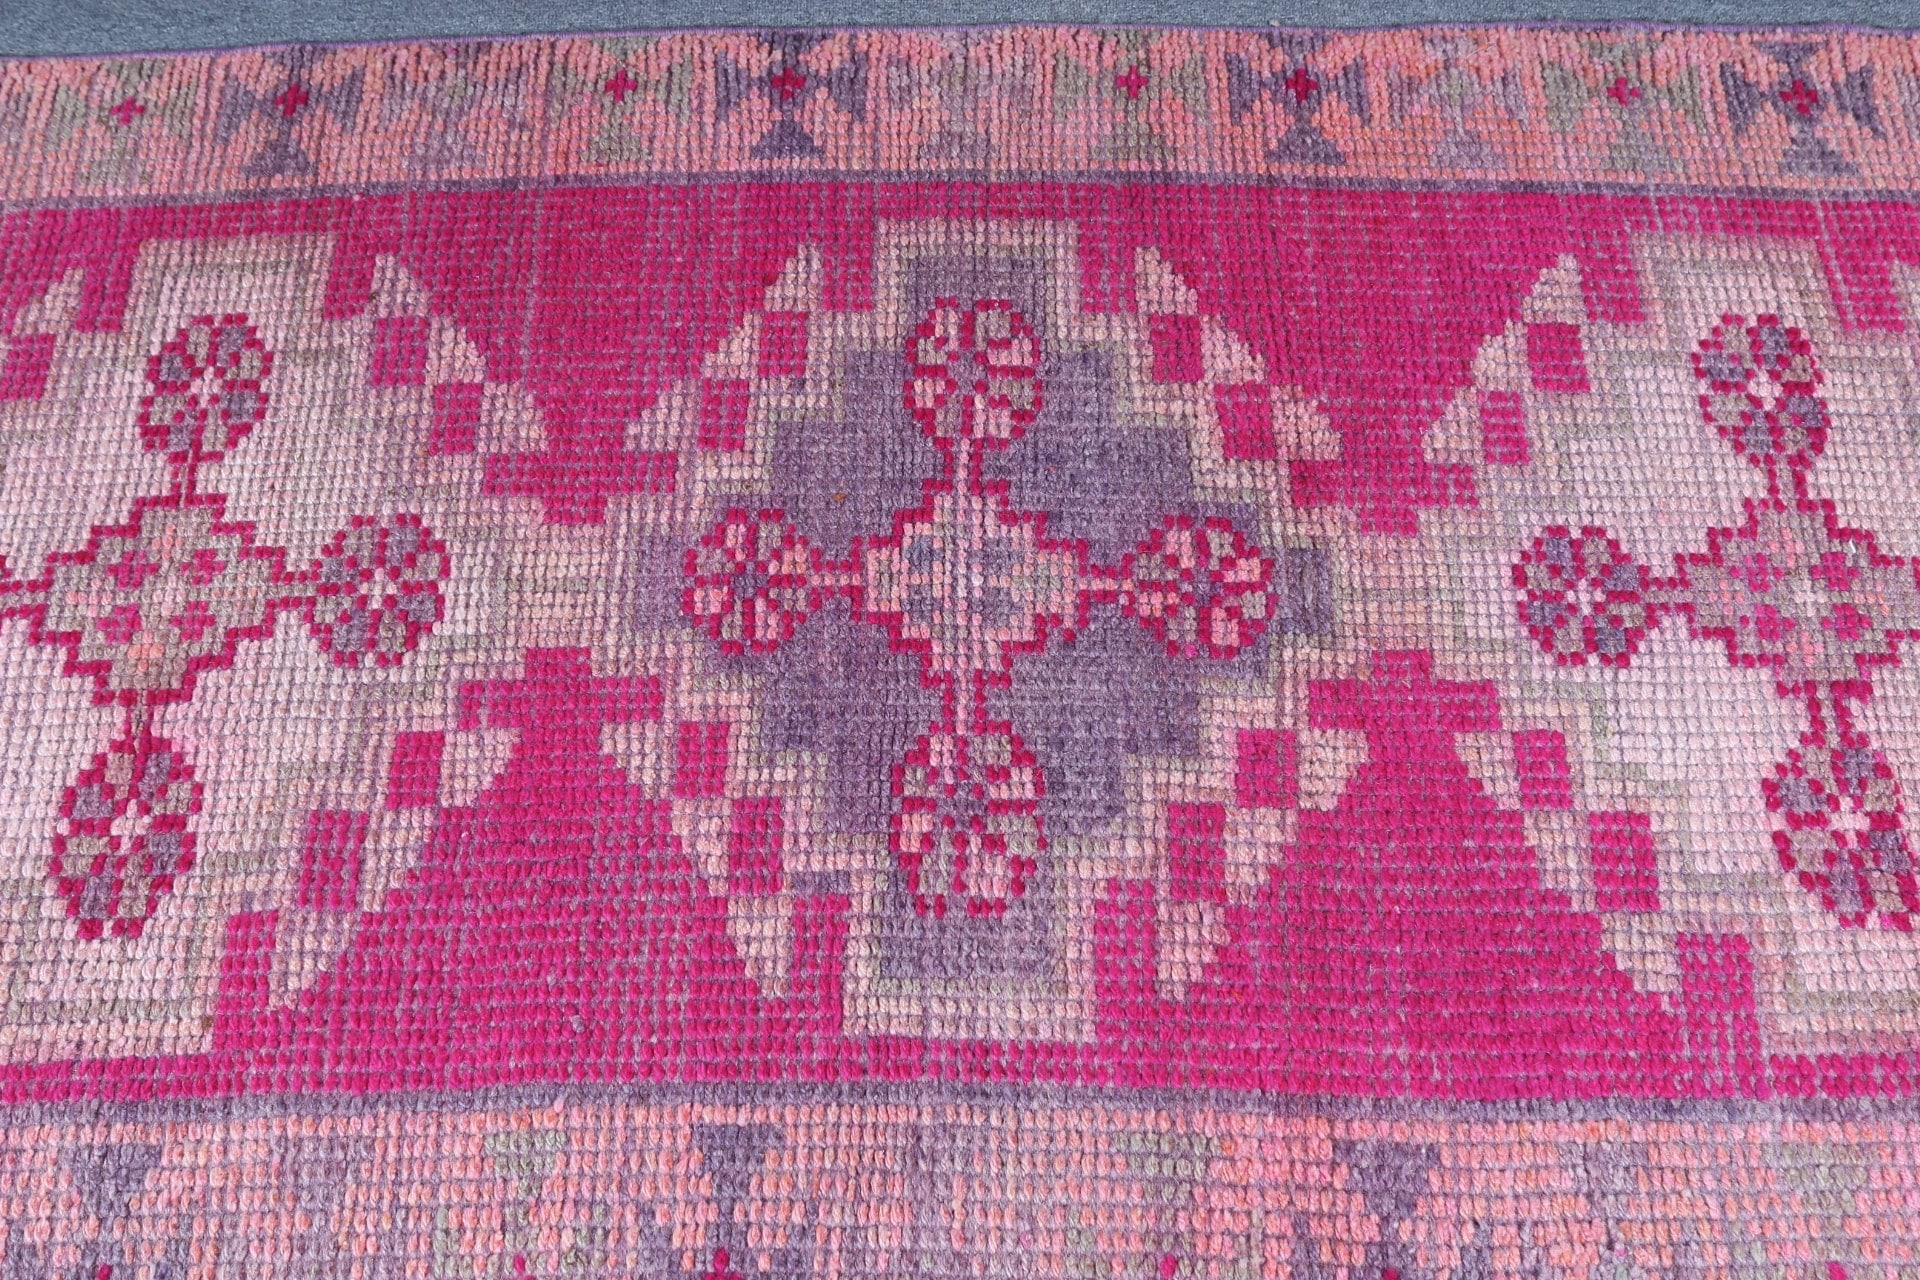 Anatolian Rugs, Rugs for Hallway, Pink Moroccan Rugs, 3.1x8.4 ft Runner Rugs, Stair Rug, Vintage Rug, Turkish Rug, Oriental Rug, Art Rug